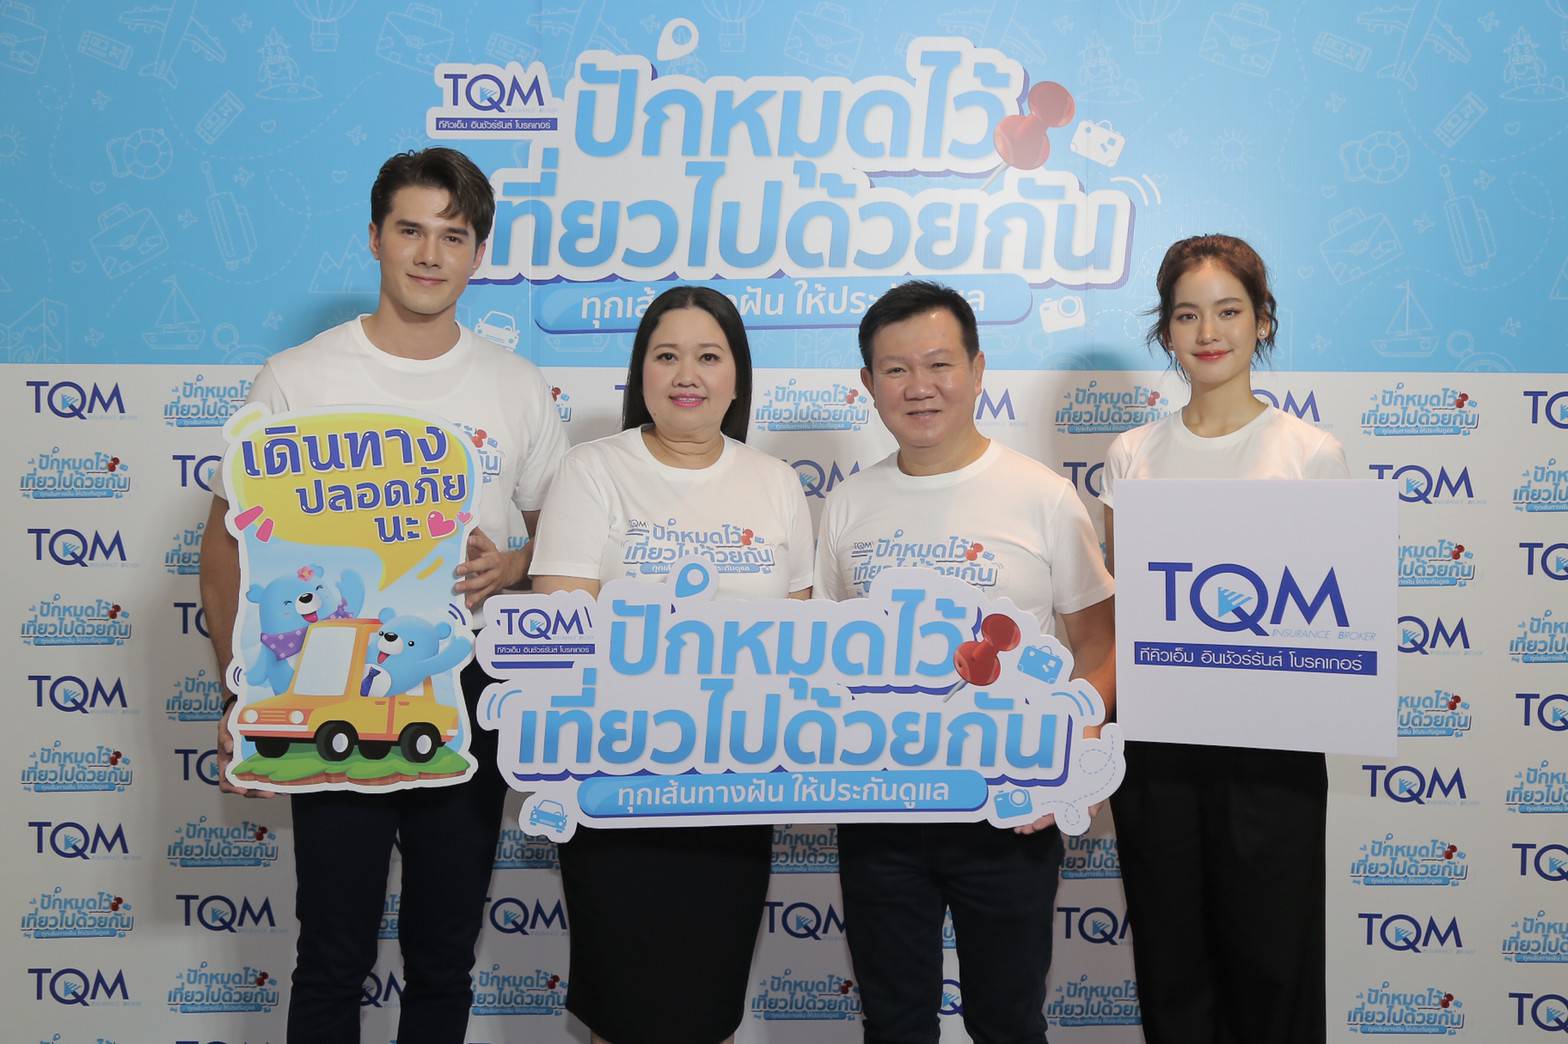 TQM ขานรับเที่ยวไทยหลังปลดล็อค ส่งแคมเปญ ปักหมุดไว้เที่ยวไปด้วยกัน พร้อมแนวคิดเที่ยวสุขใจพกประกันภัยติดตัว